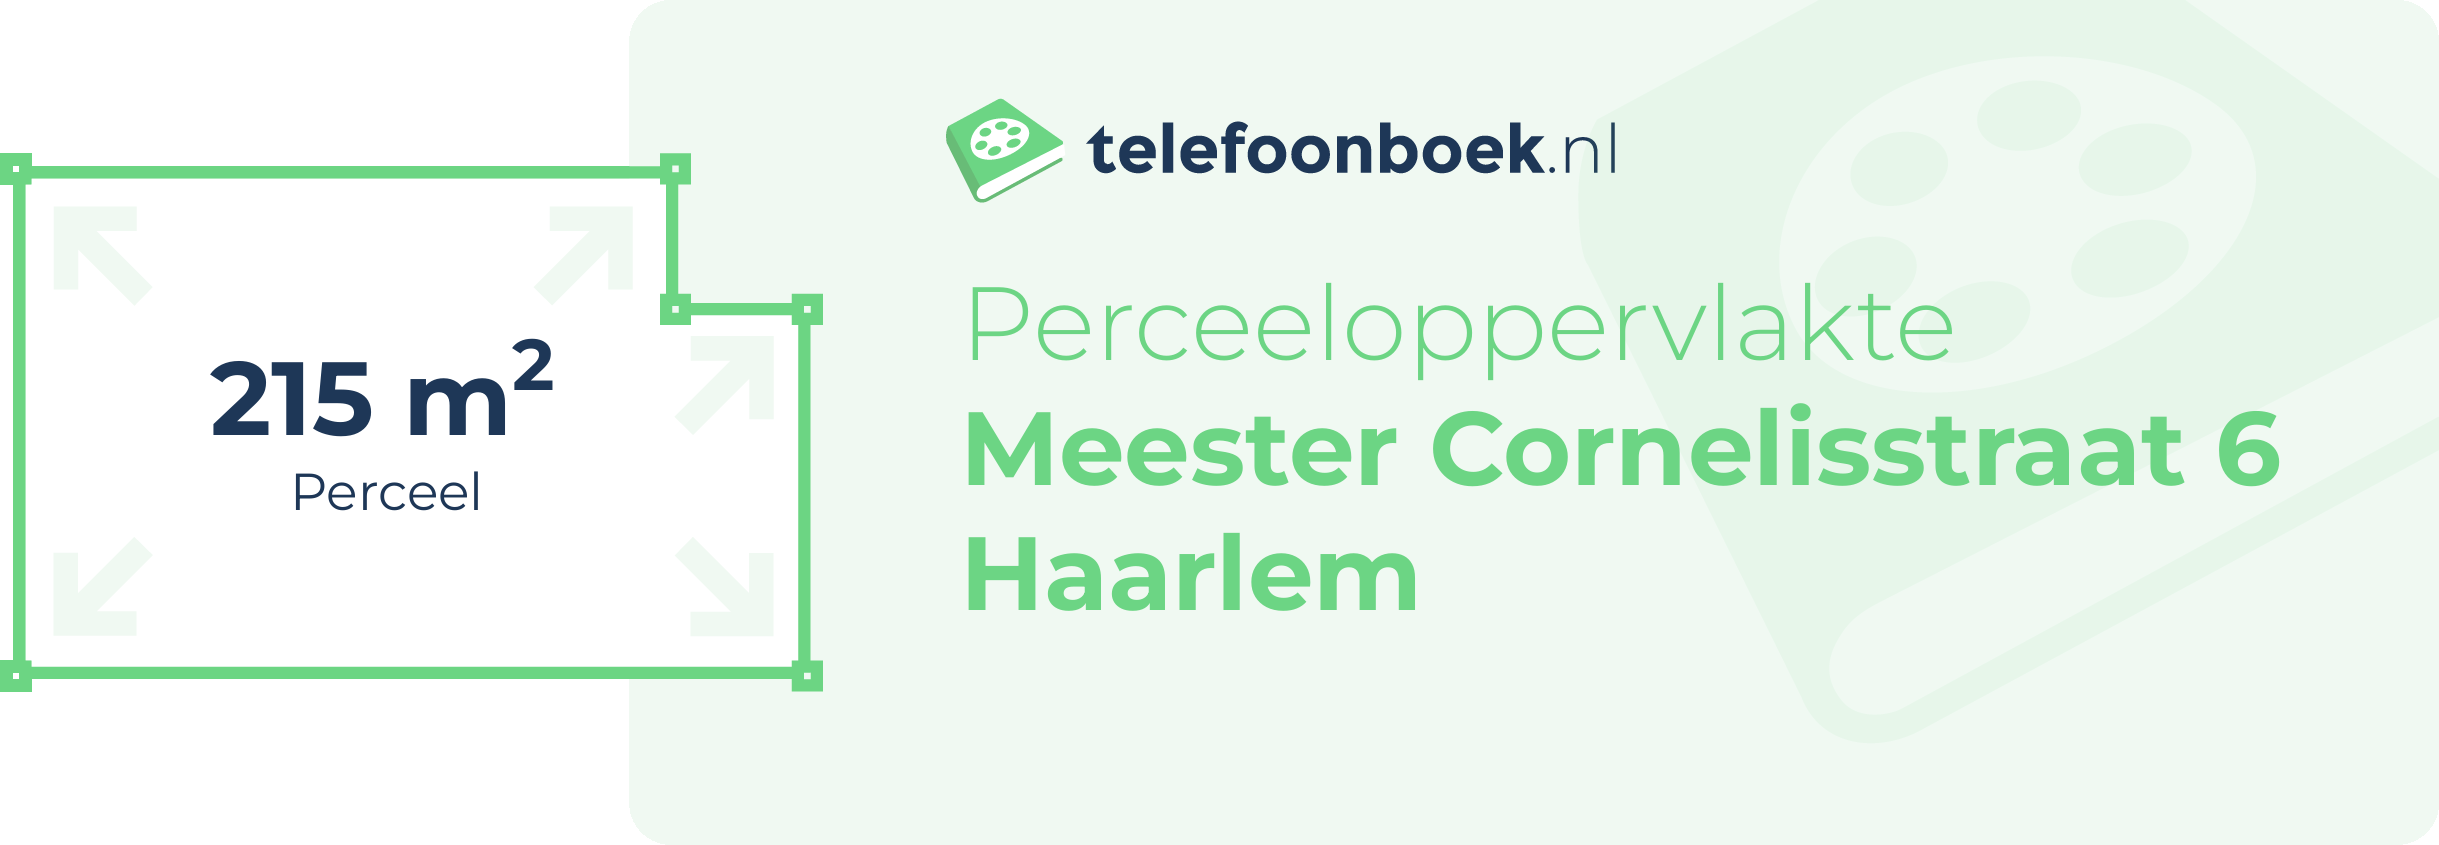 Perceeloppervlakte Meester Cornelisstraat 6 Haarlem